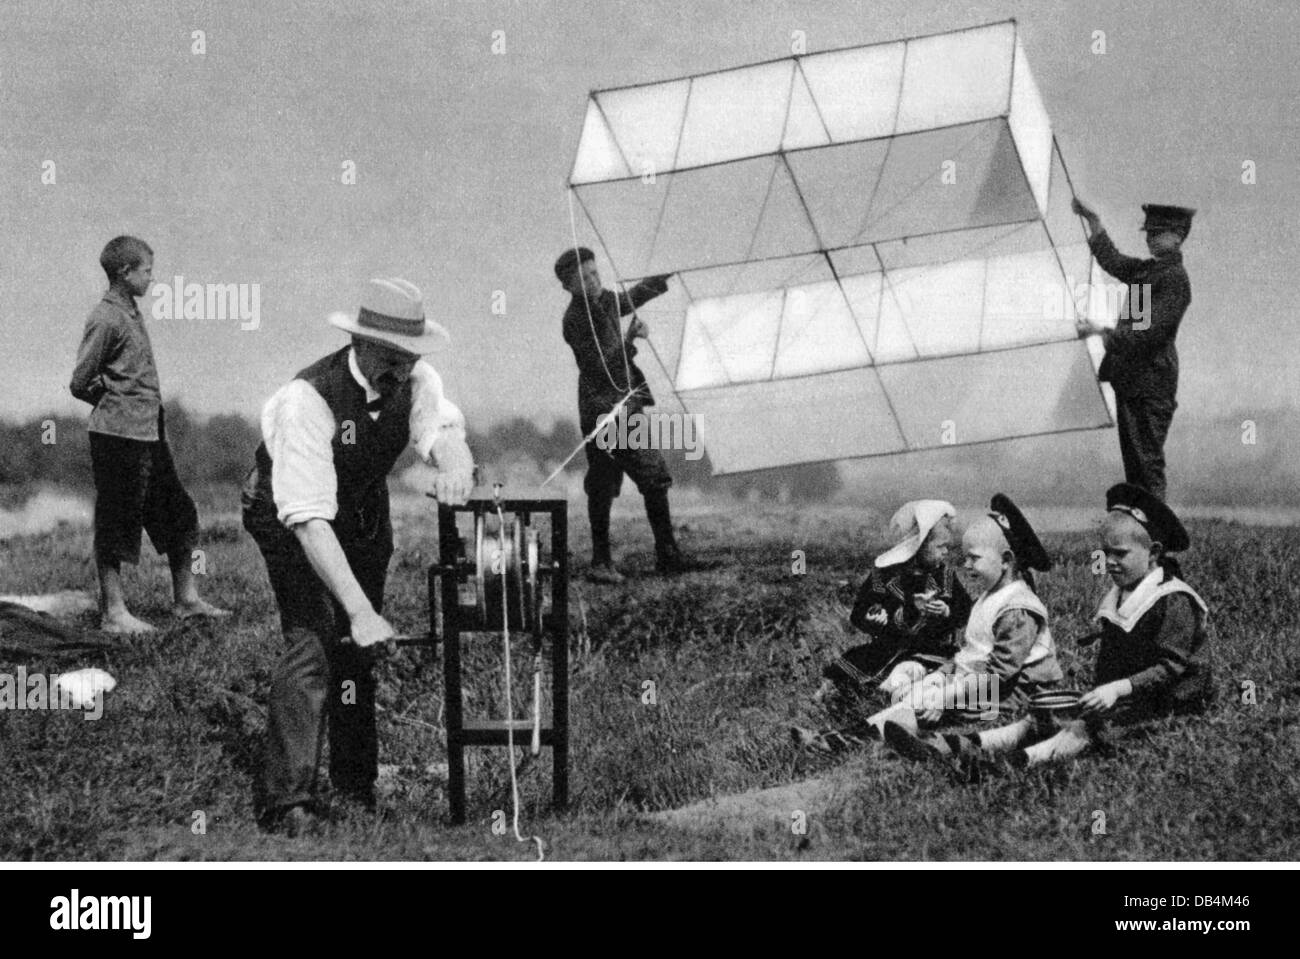 Loisirs, kitevolante, les gens qui laissent des cerfs-volants voler, champ de Tempelhof, Berlin, 1905, droits-supplémentaires-Clearences-non disponible Banque D'Images